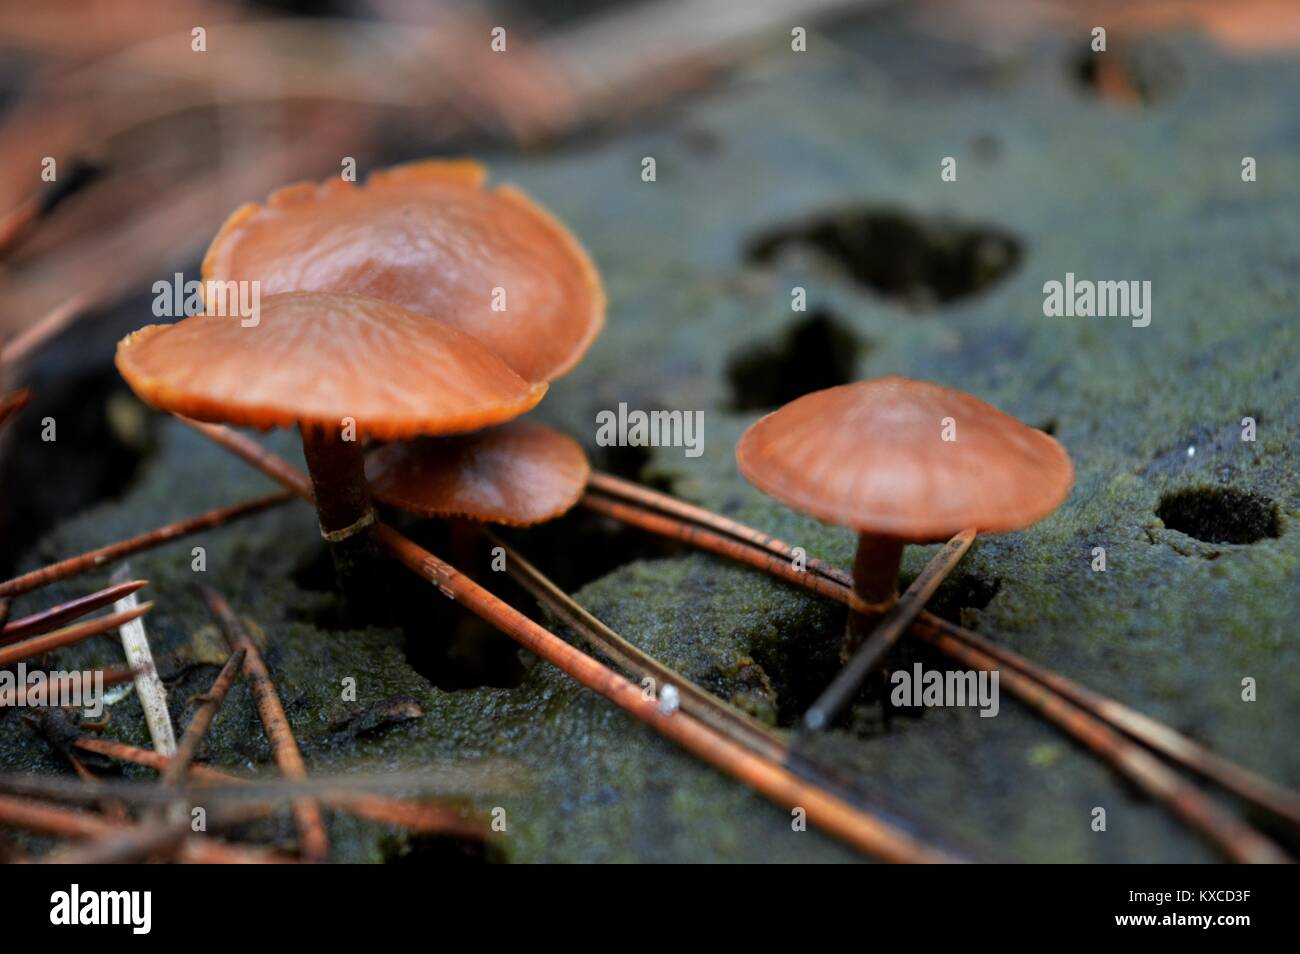 mushrooms on stump Stock Photo